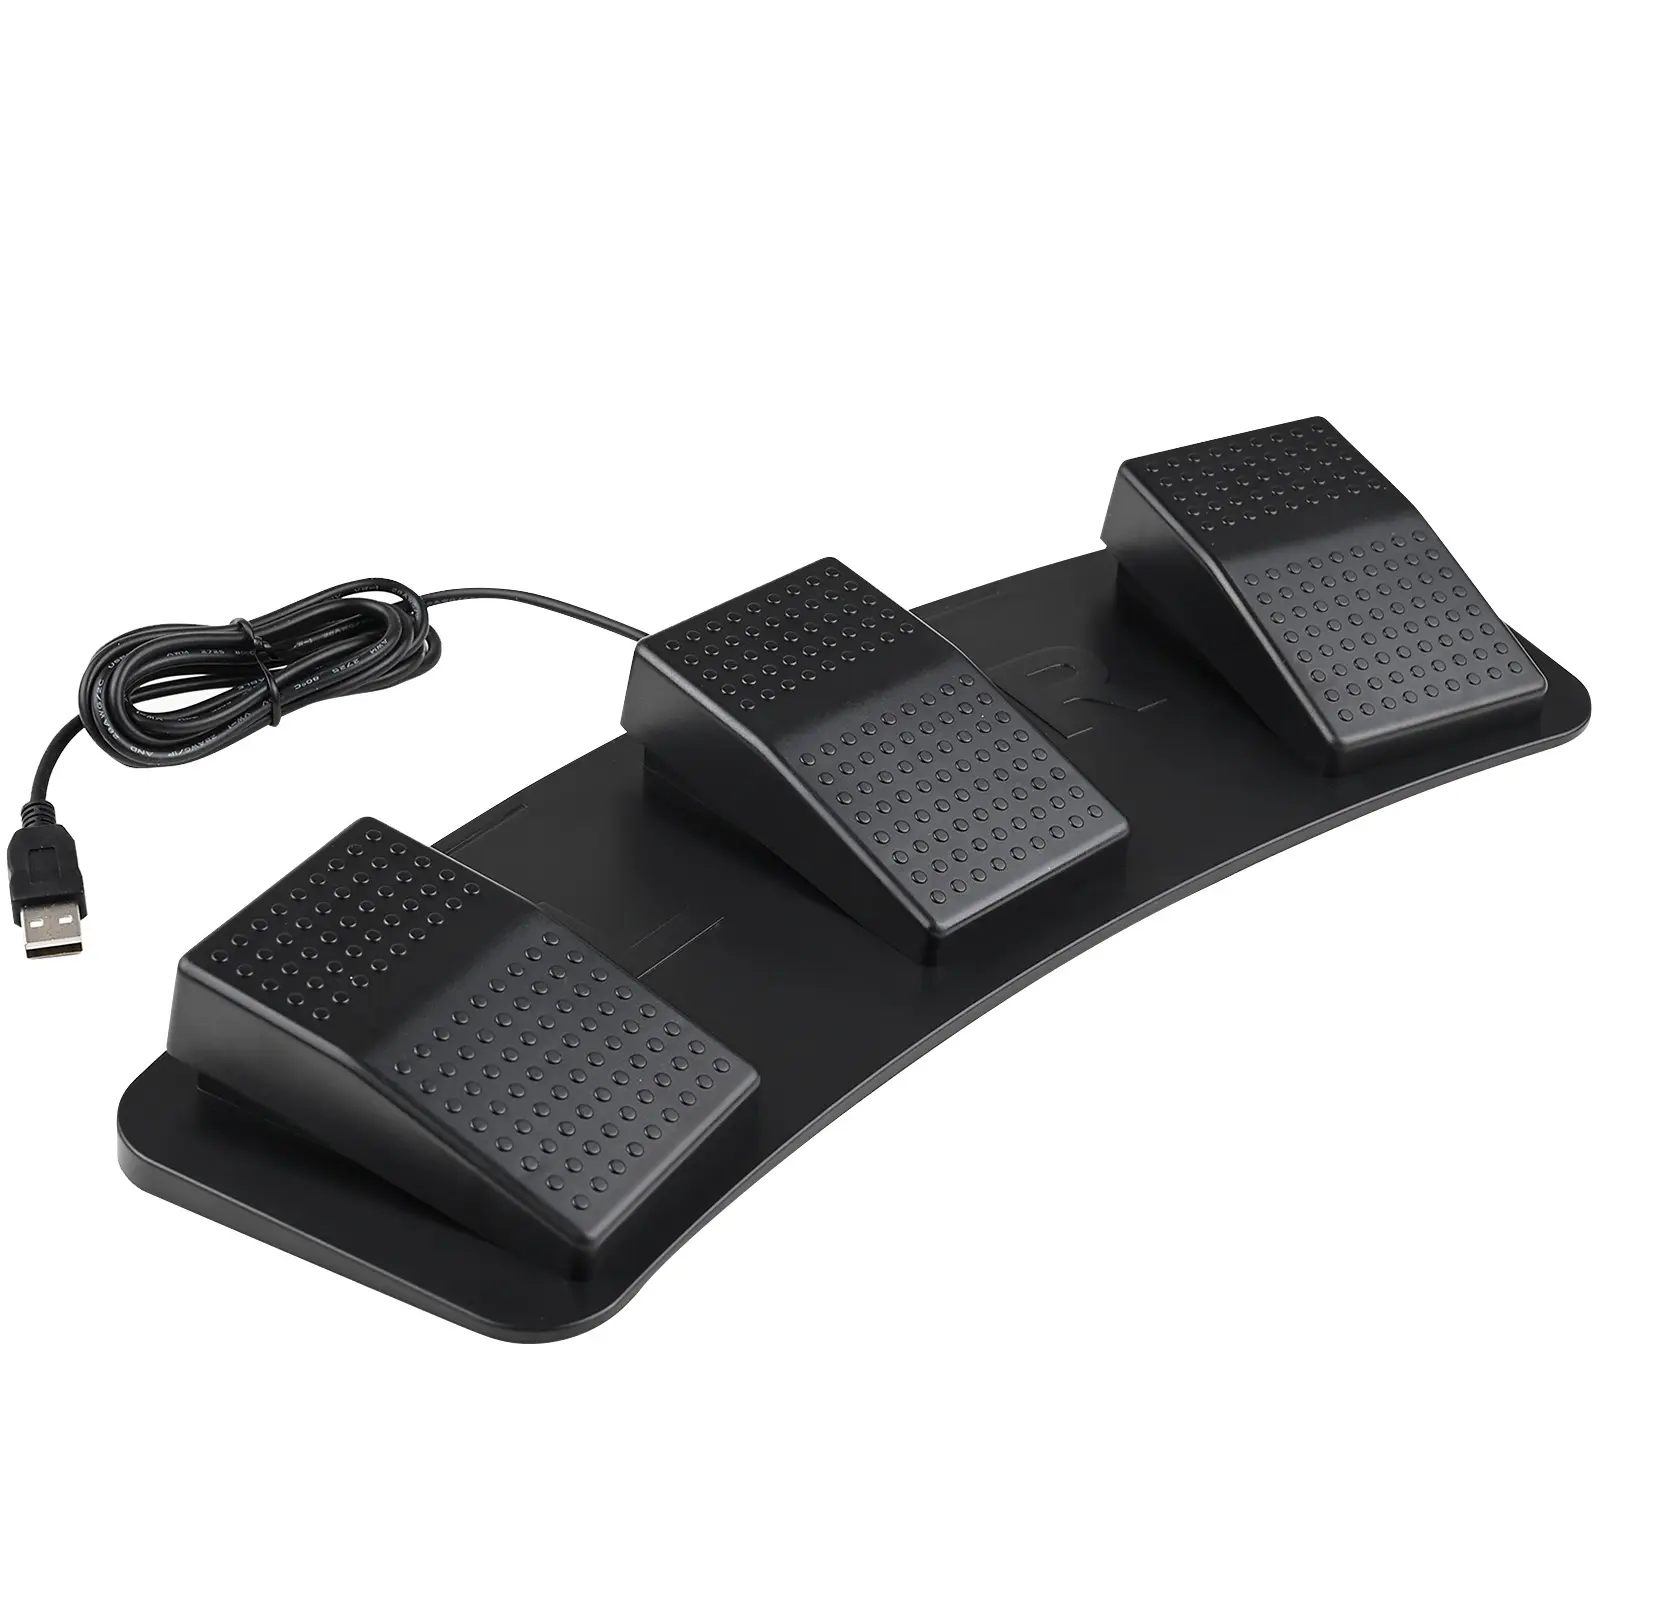 Ayak anahtarı 3 üçlü kontrol eylem pedalı klavye fare PC LAPTOP için USB ayak anahtarı pedalı